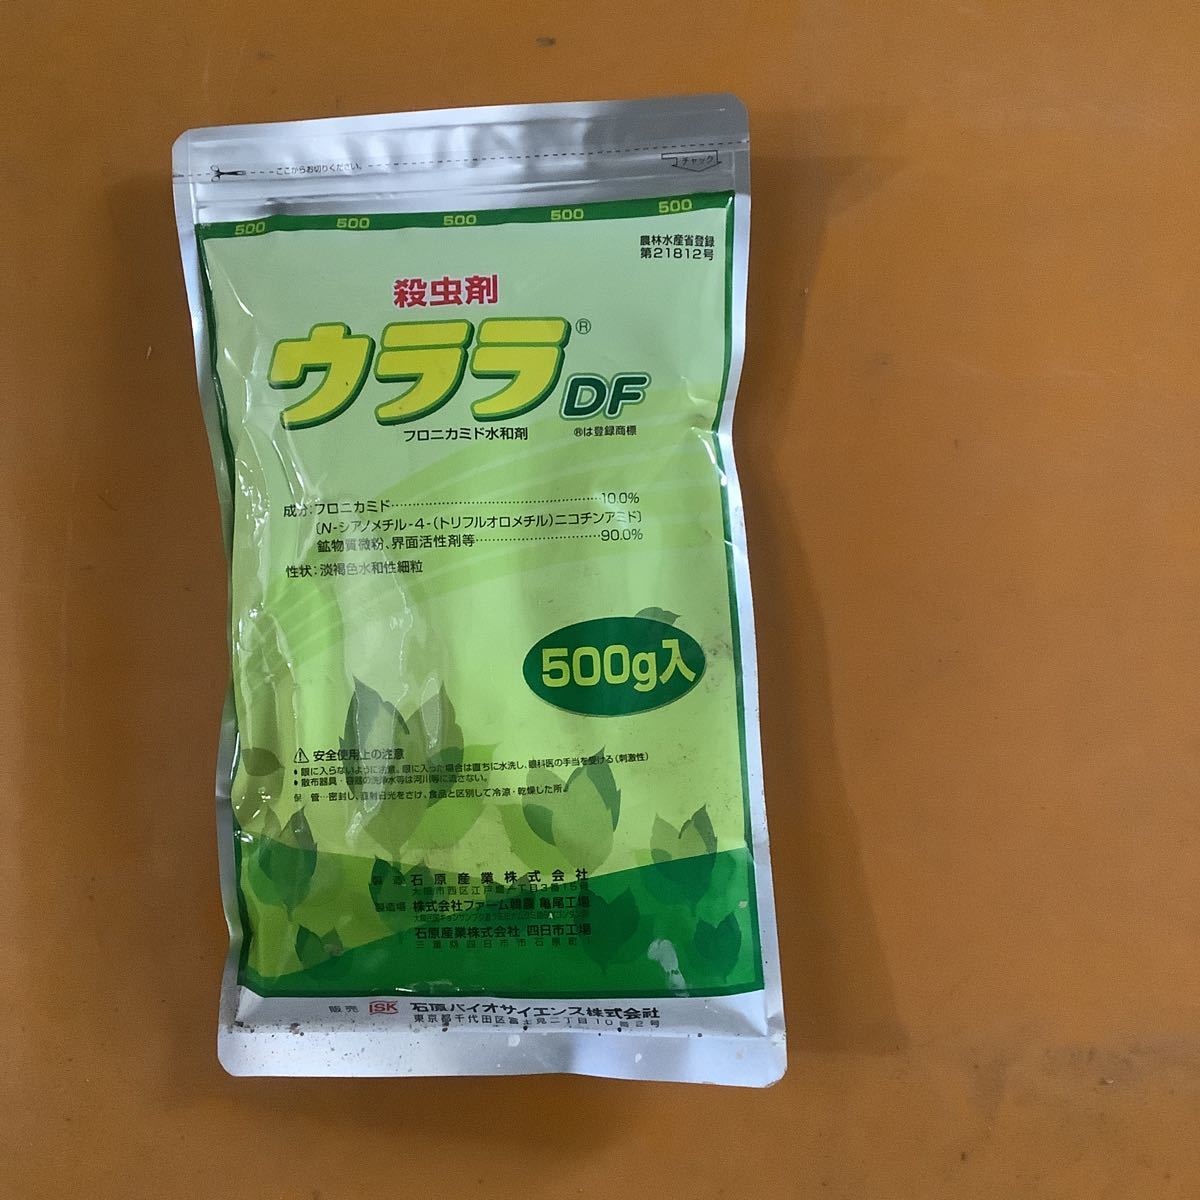 宅配便送料無料 殺虫剤 ウララＤＦ 500g×3袋セット